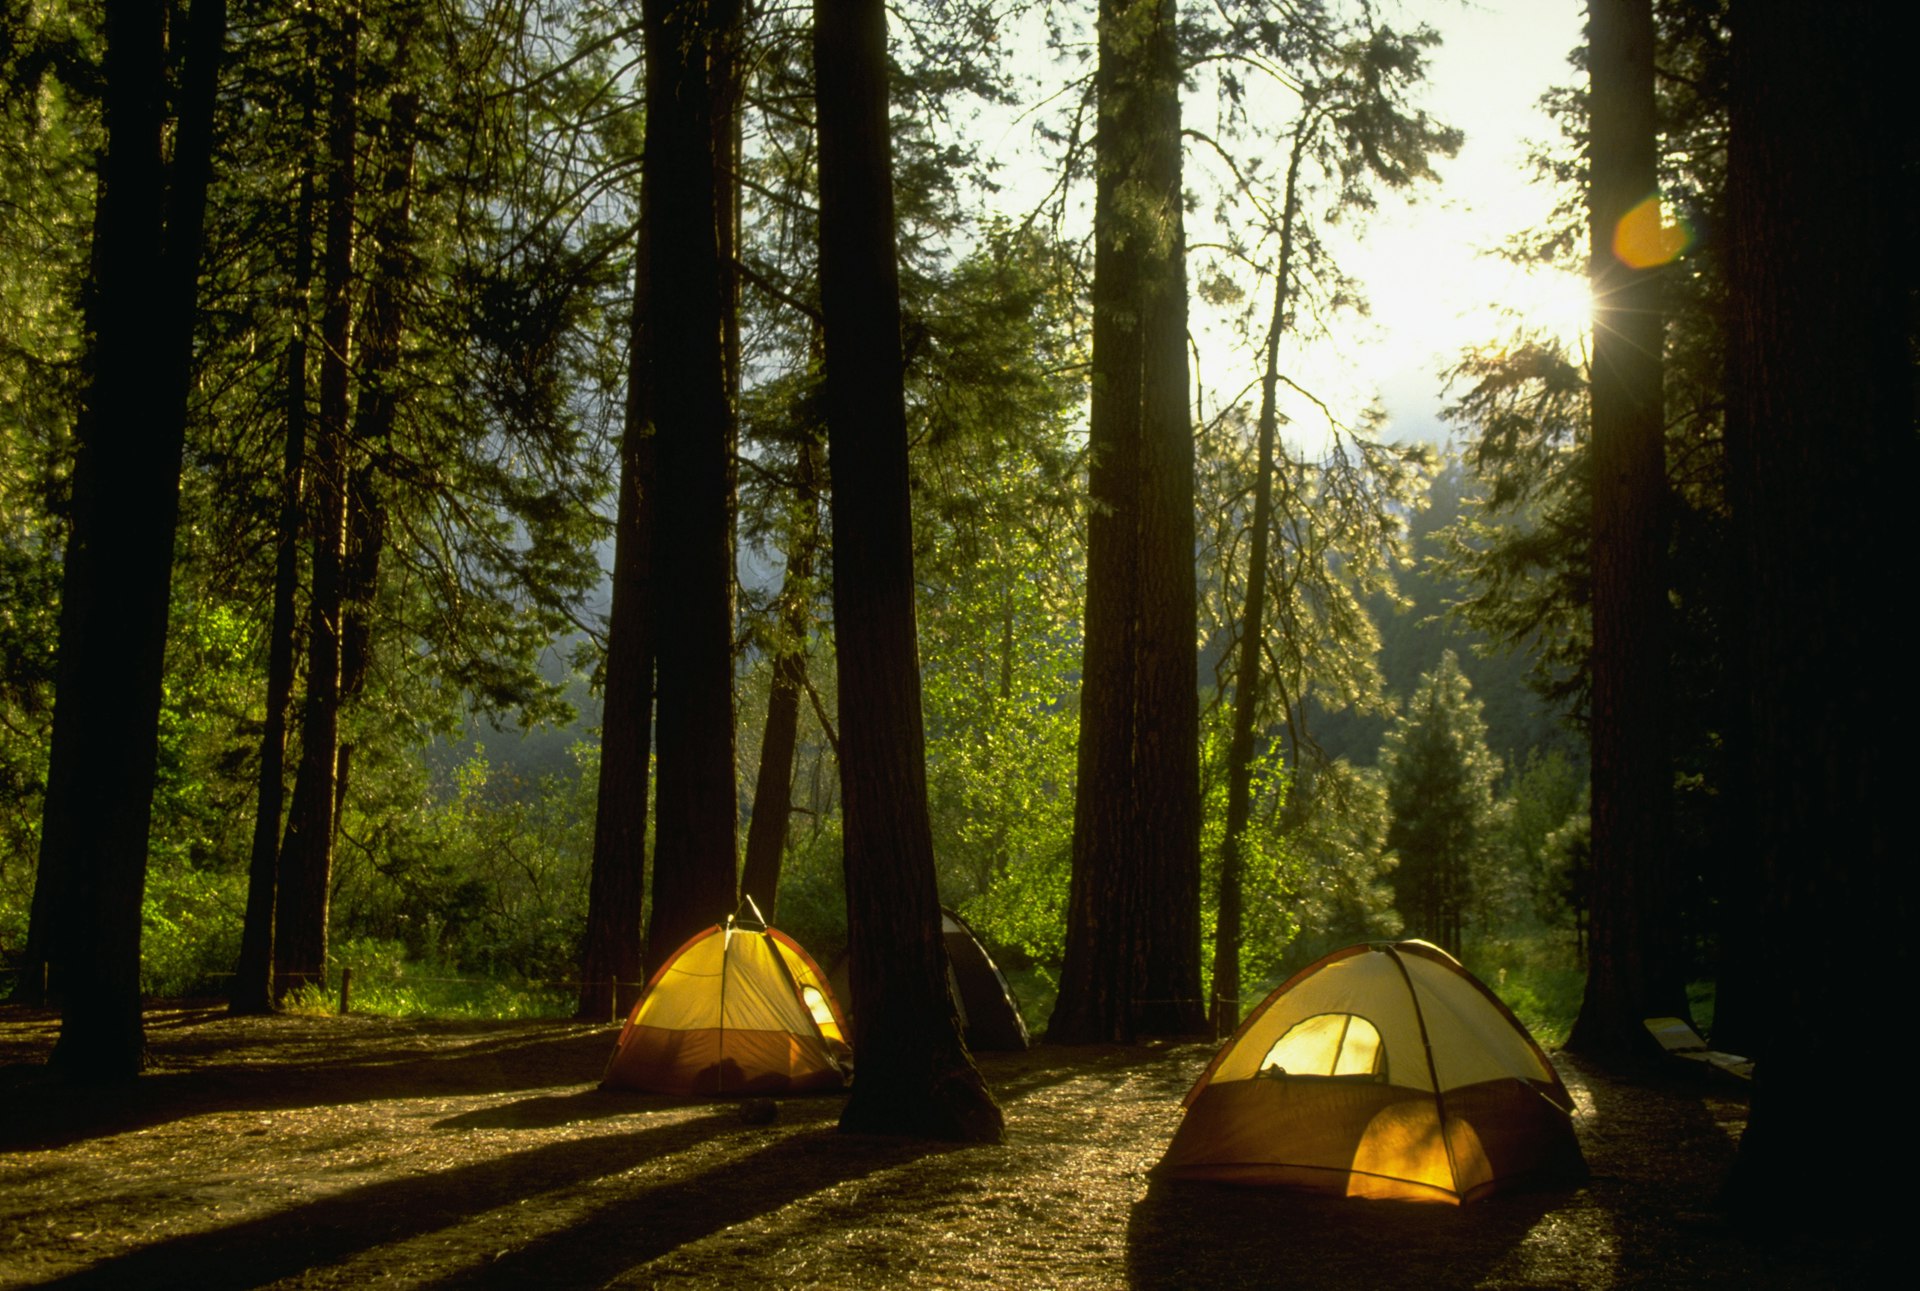 Camping in Yosemite Woods